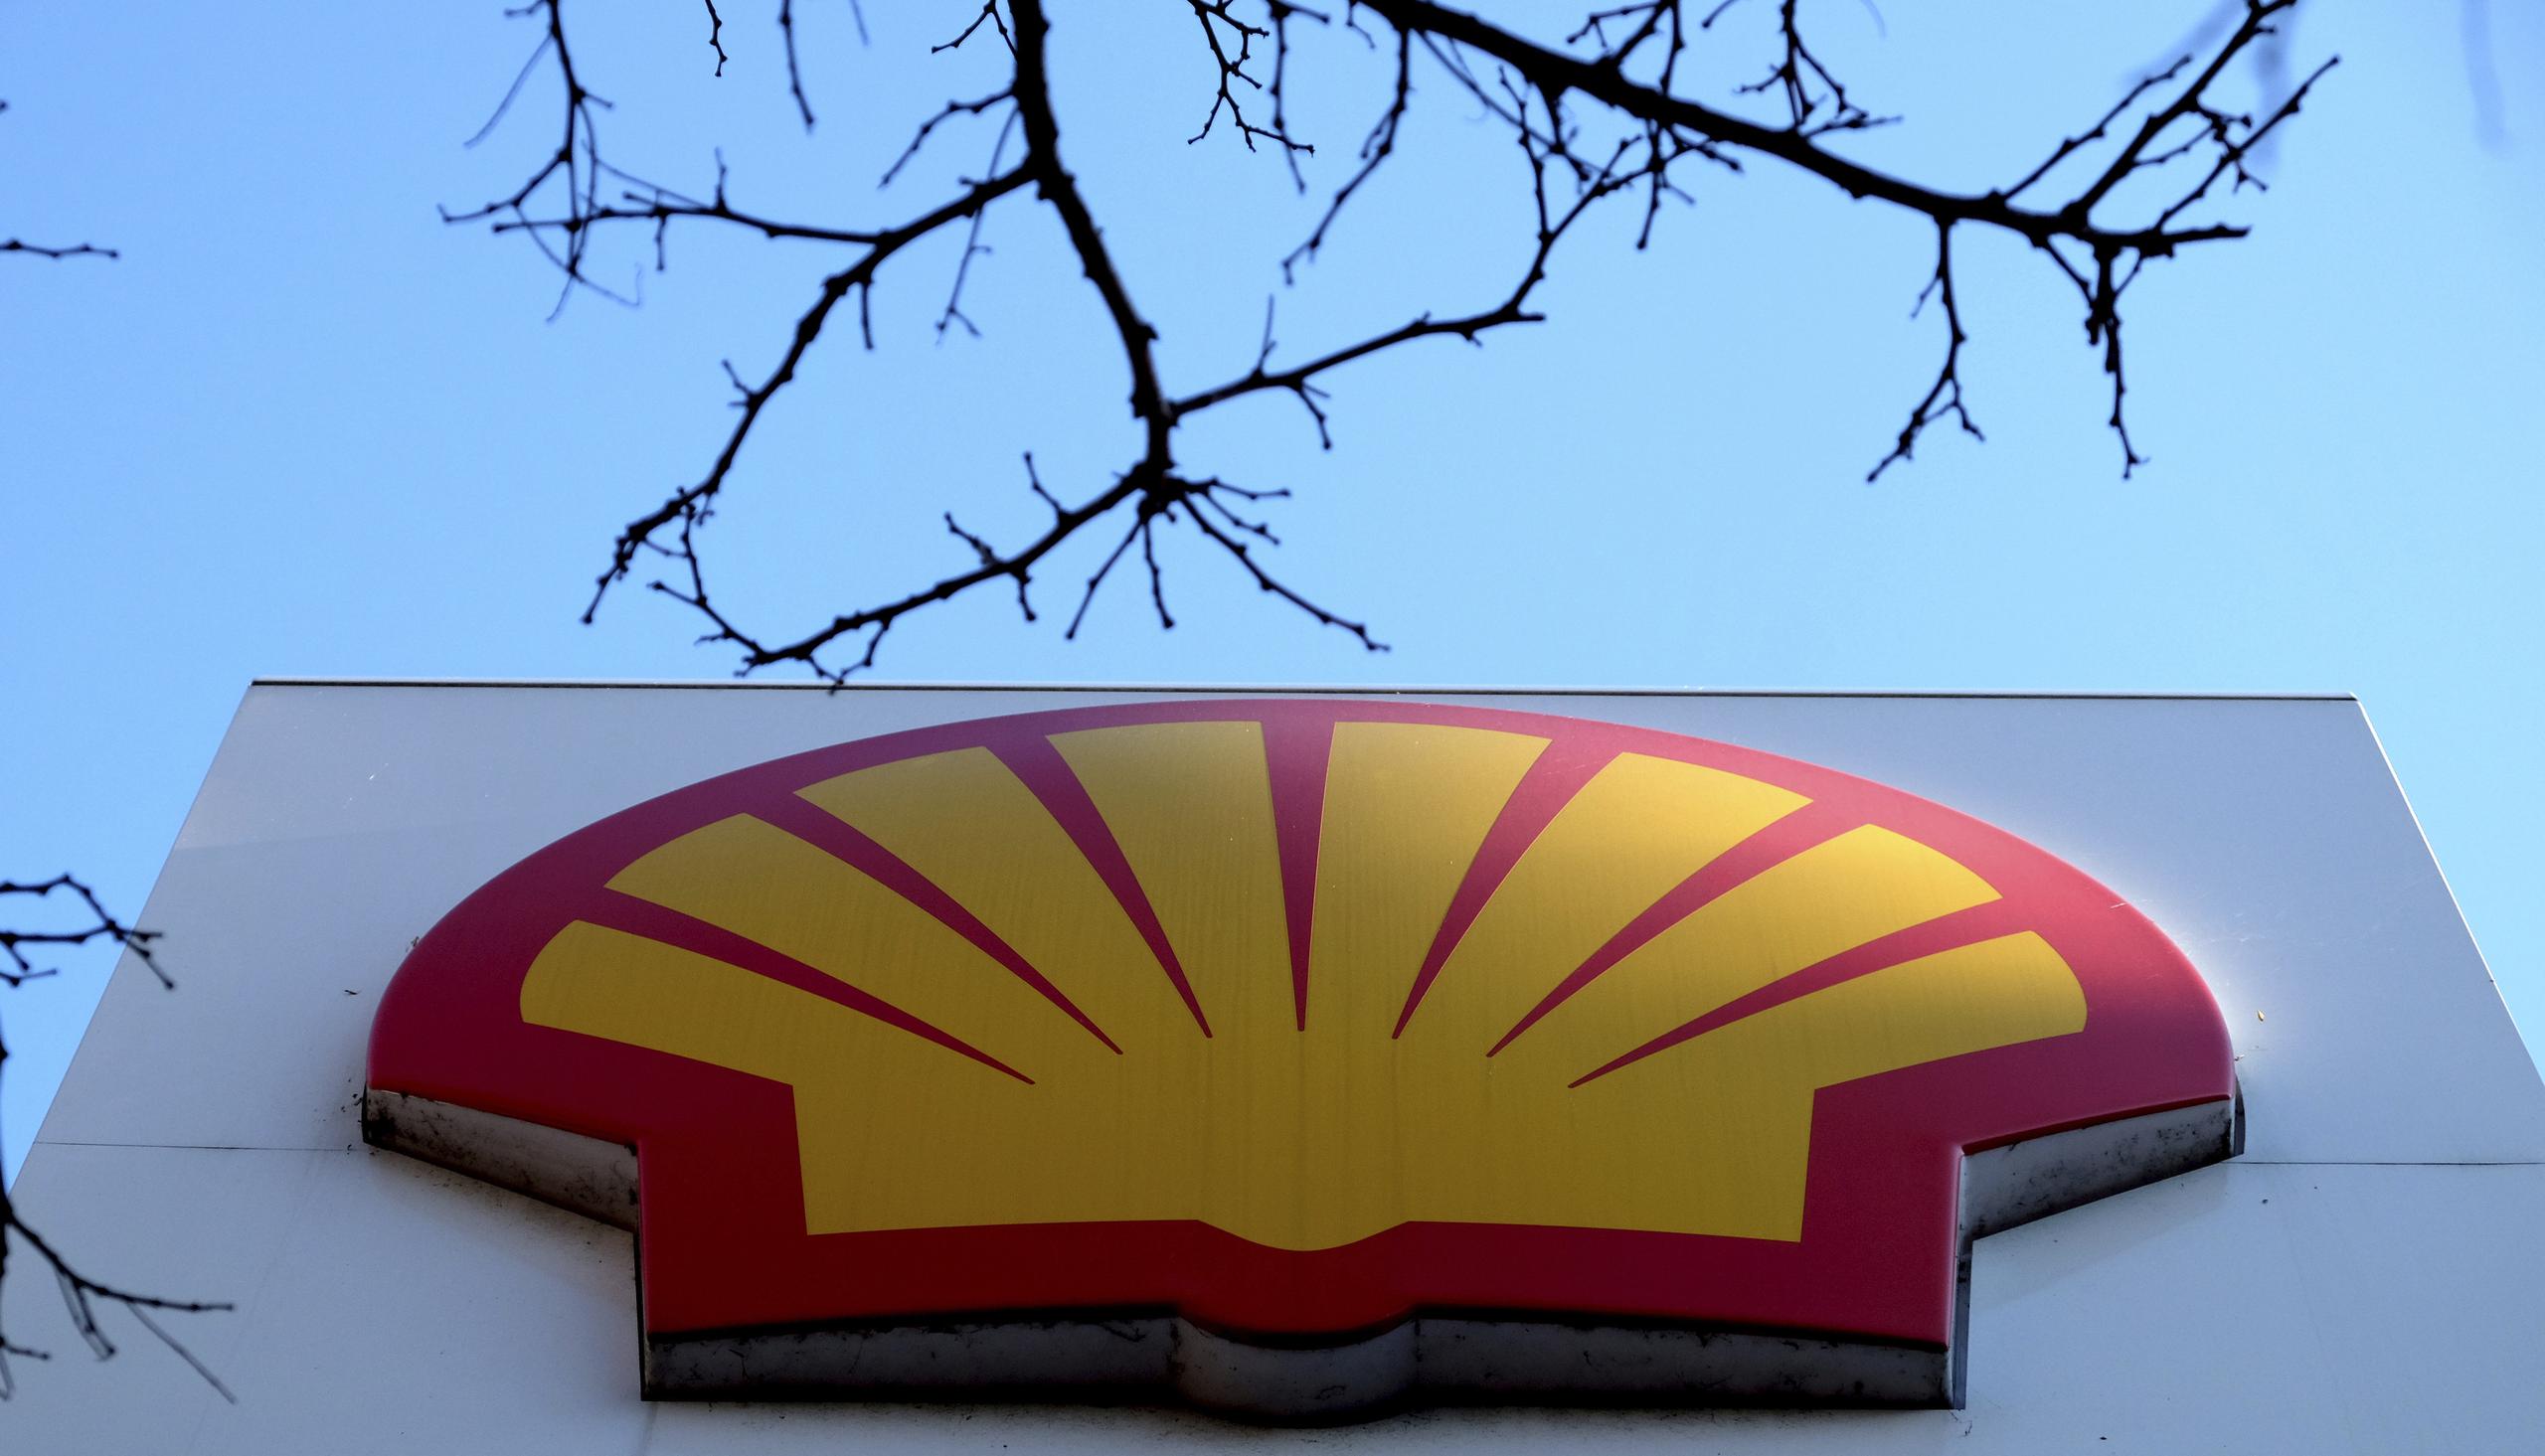 El ministro ucraniano de Exteriores, Dmytro Kuleba, dijo que había sabido que Shell compró “discretamente” el crudo el viernes y pidió al público que presionara a la empresa y otras firmas internacionales para detener esas compras.